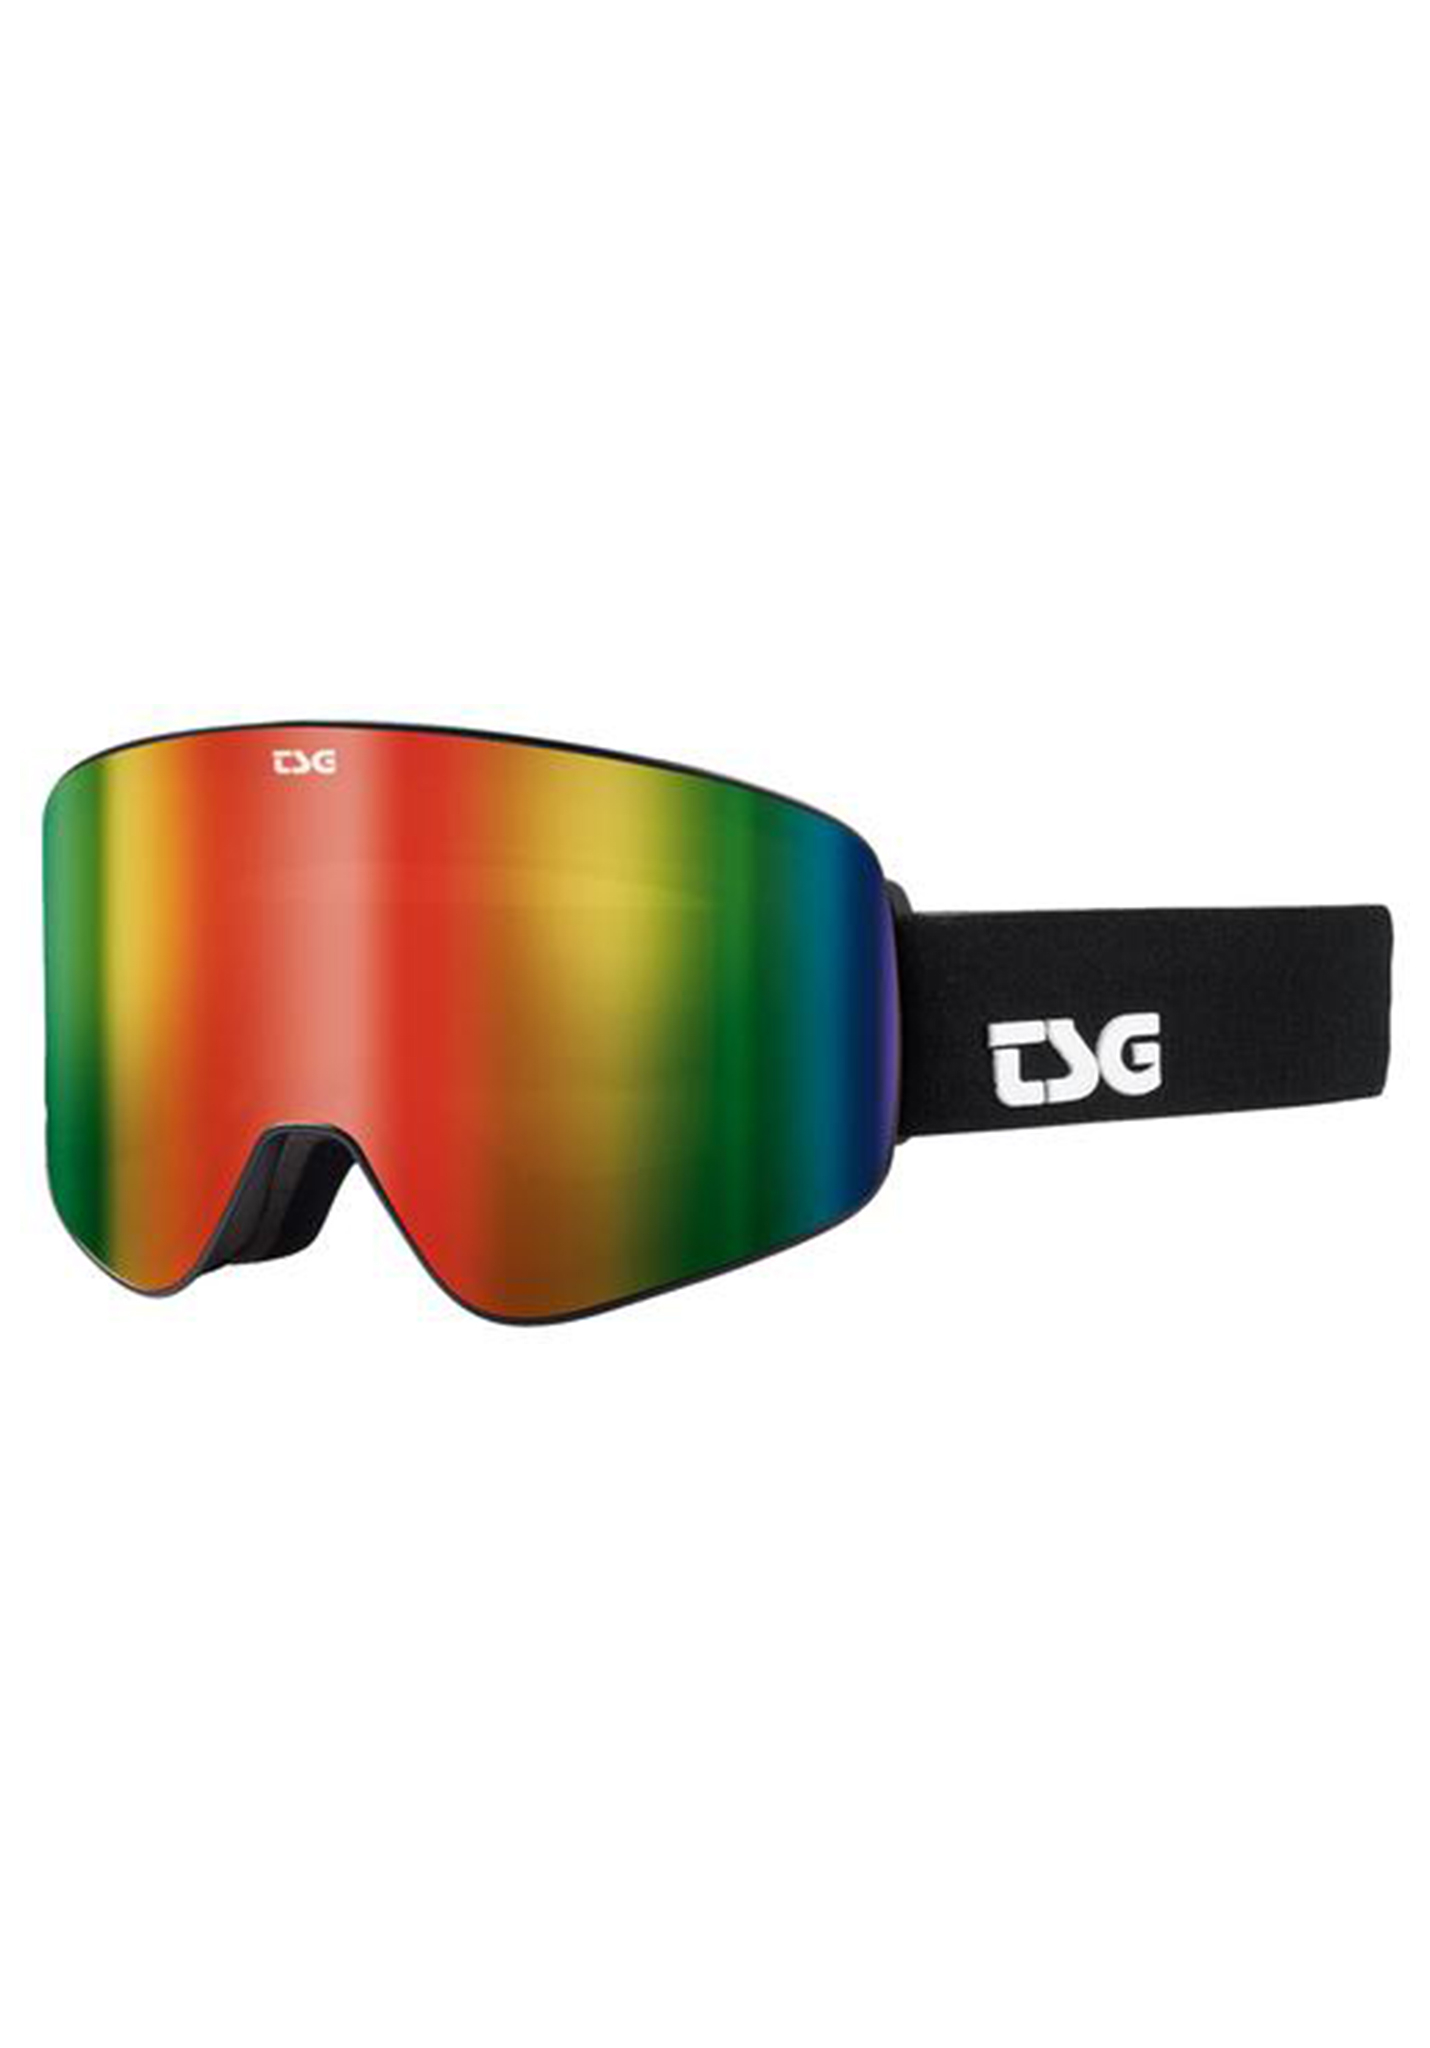 TSG Four S Snowboardbrillen schwarz/regenbogen chrom One Size